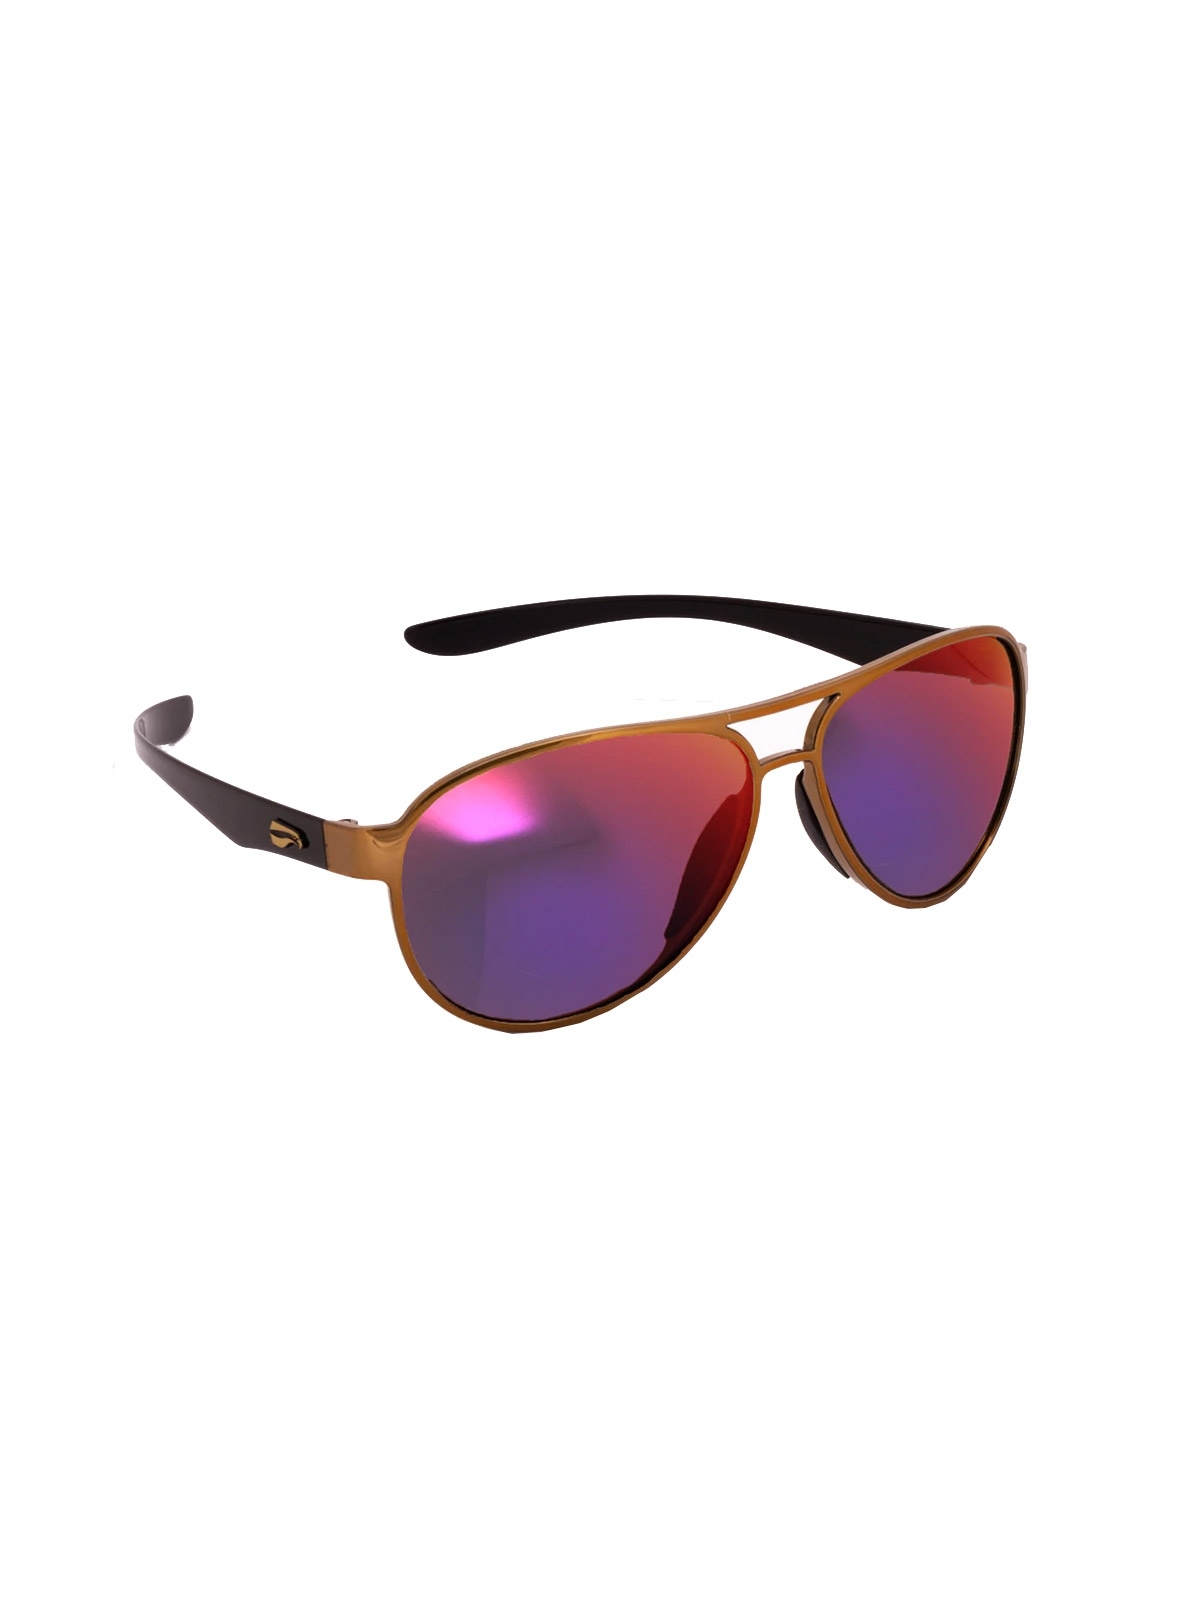 Flying Eyes Sunglasses Kestrel Aviator - Golden Front Frame, Mirrored Sunset Lenses